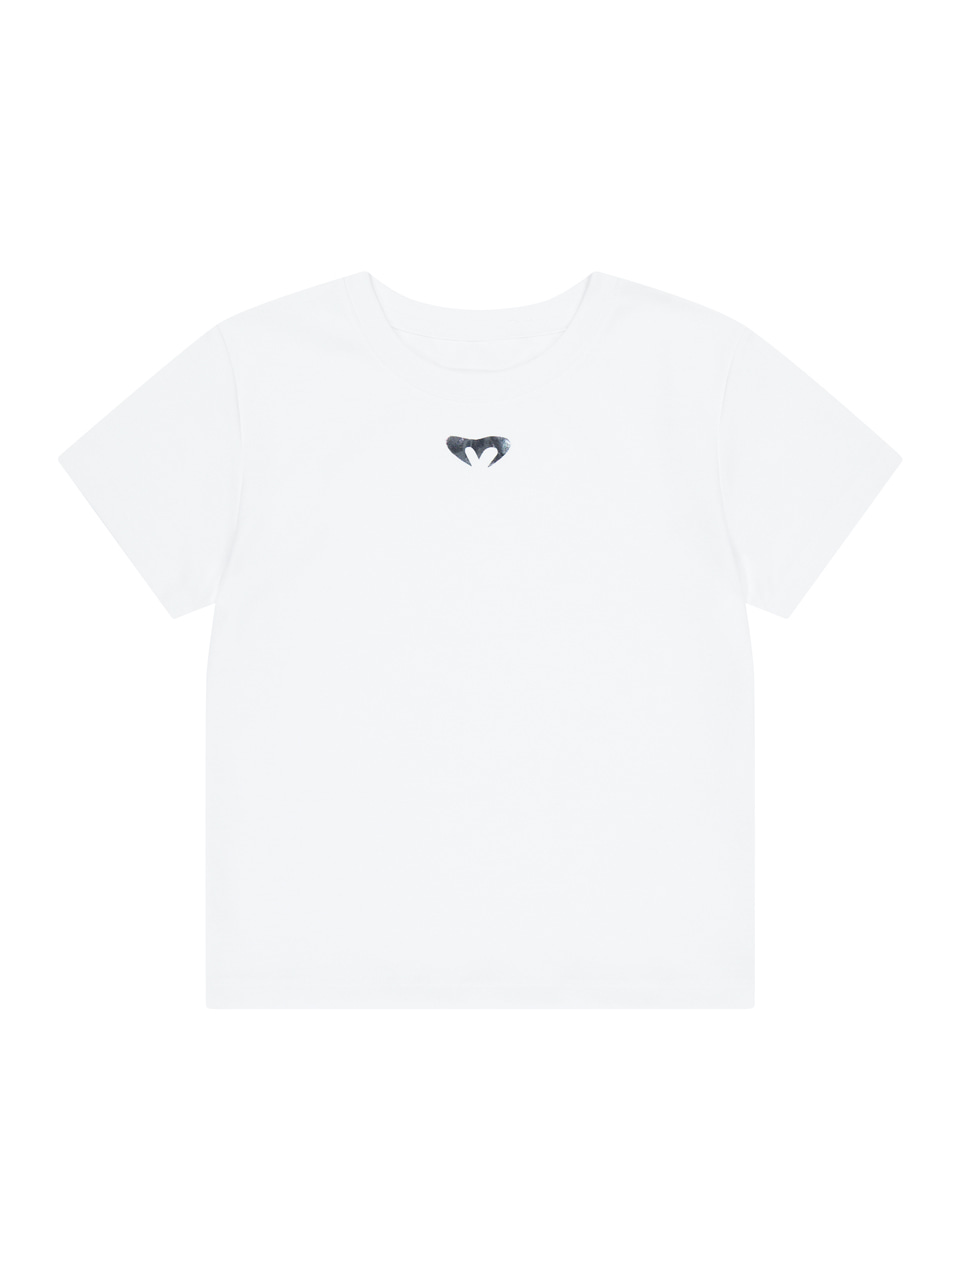 무음 Silver Logo T-shirt (White)